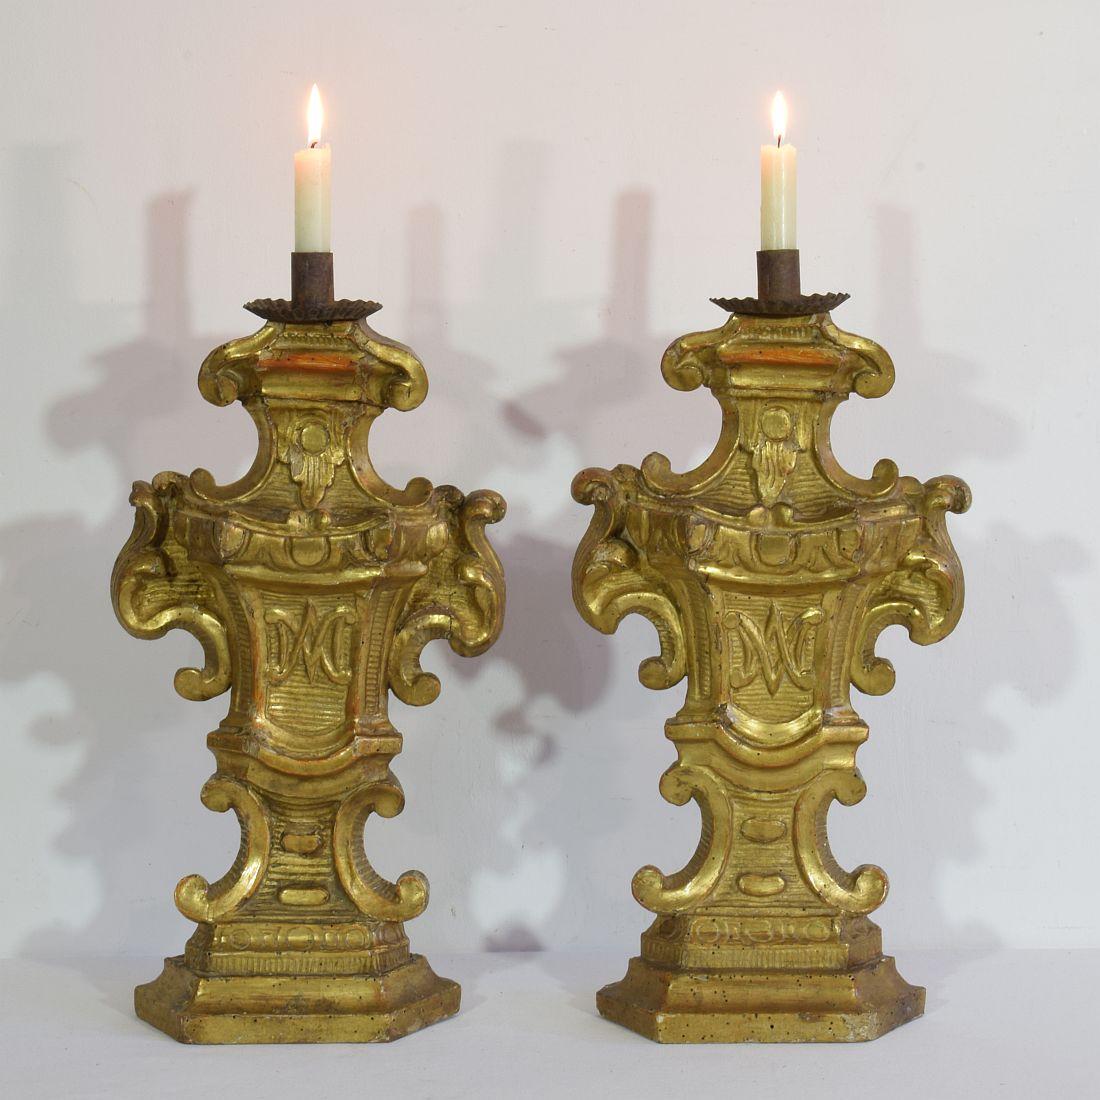 Wunderschöne barocke Kerzenhalter aus vergoldetem Holz, Italien, um 1750-1780. Verwittert, Reparaturen und kleine Schäden.
Messung individuell.